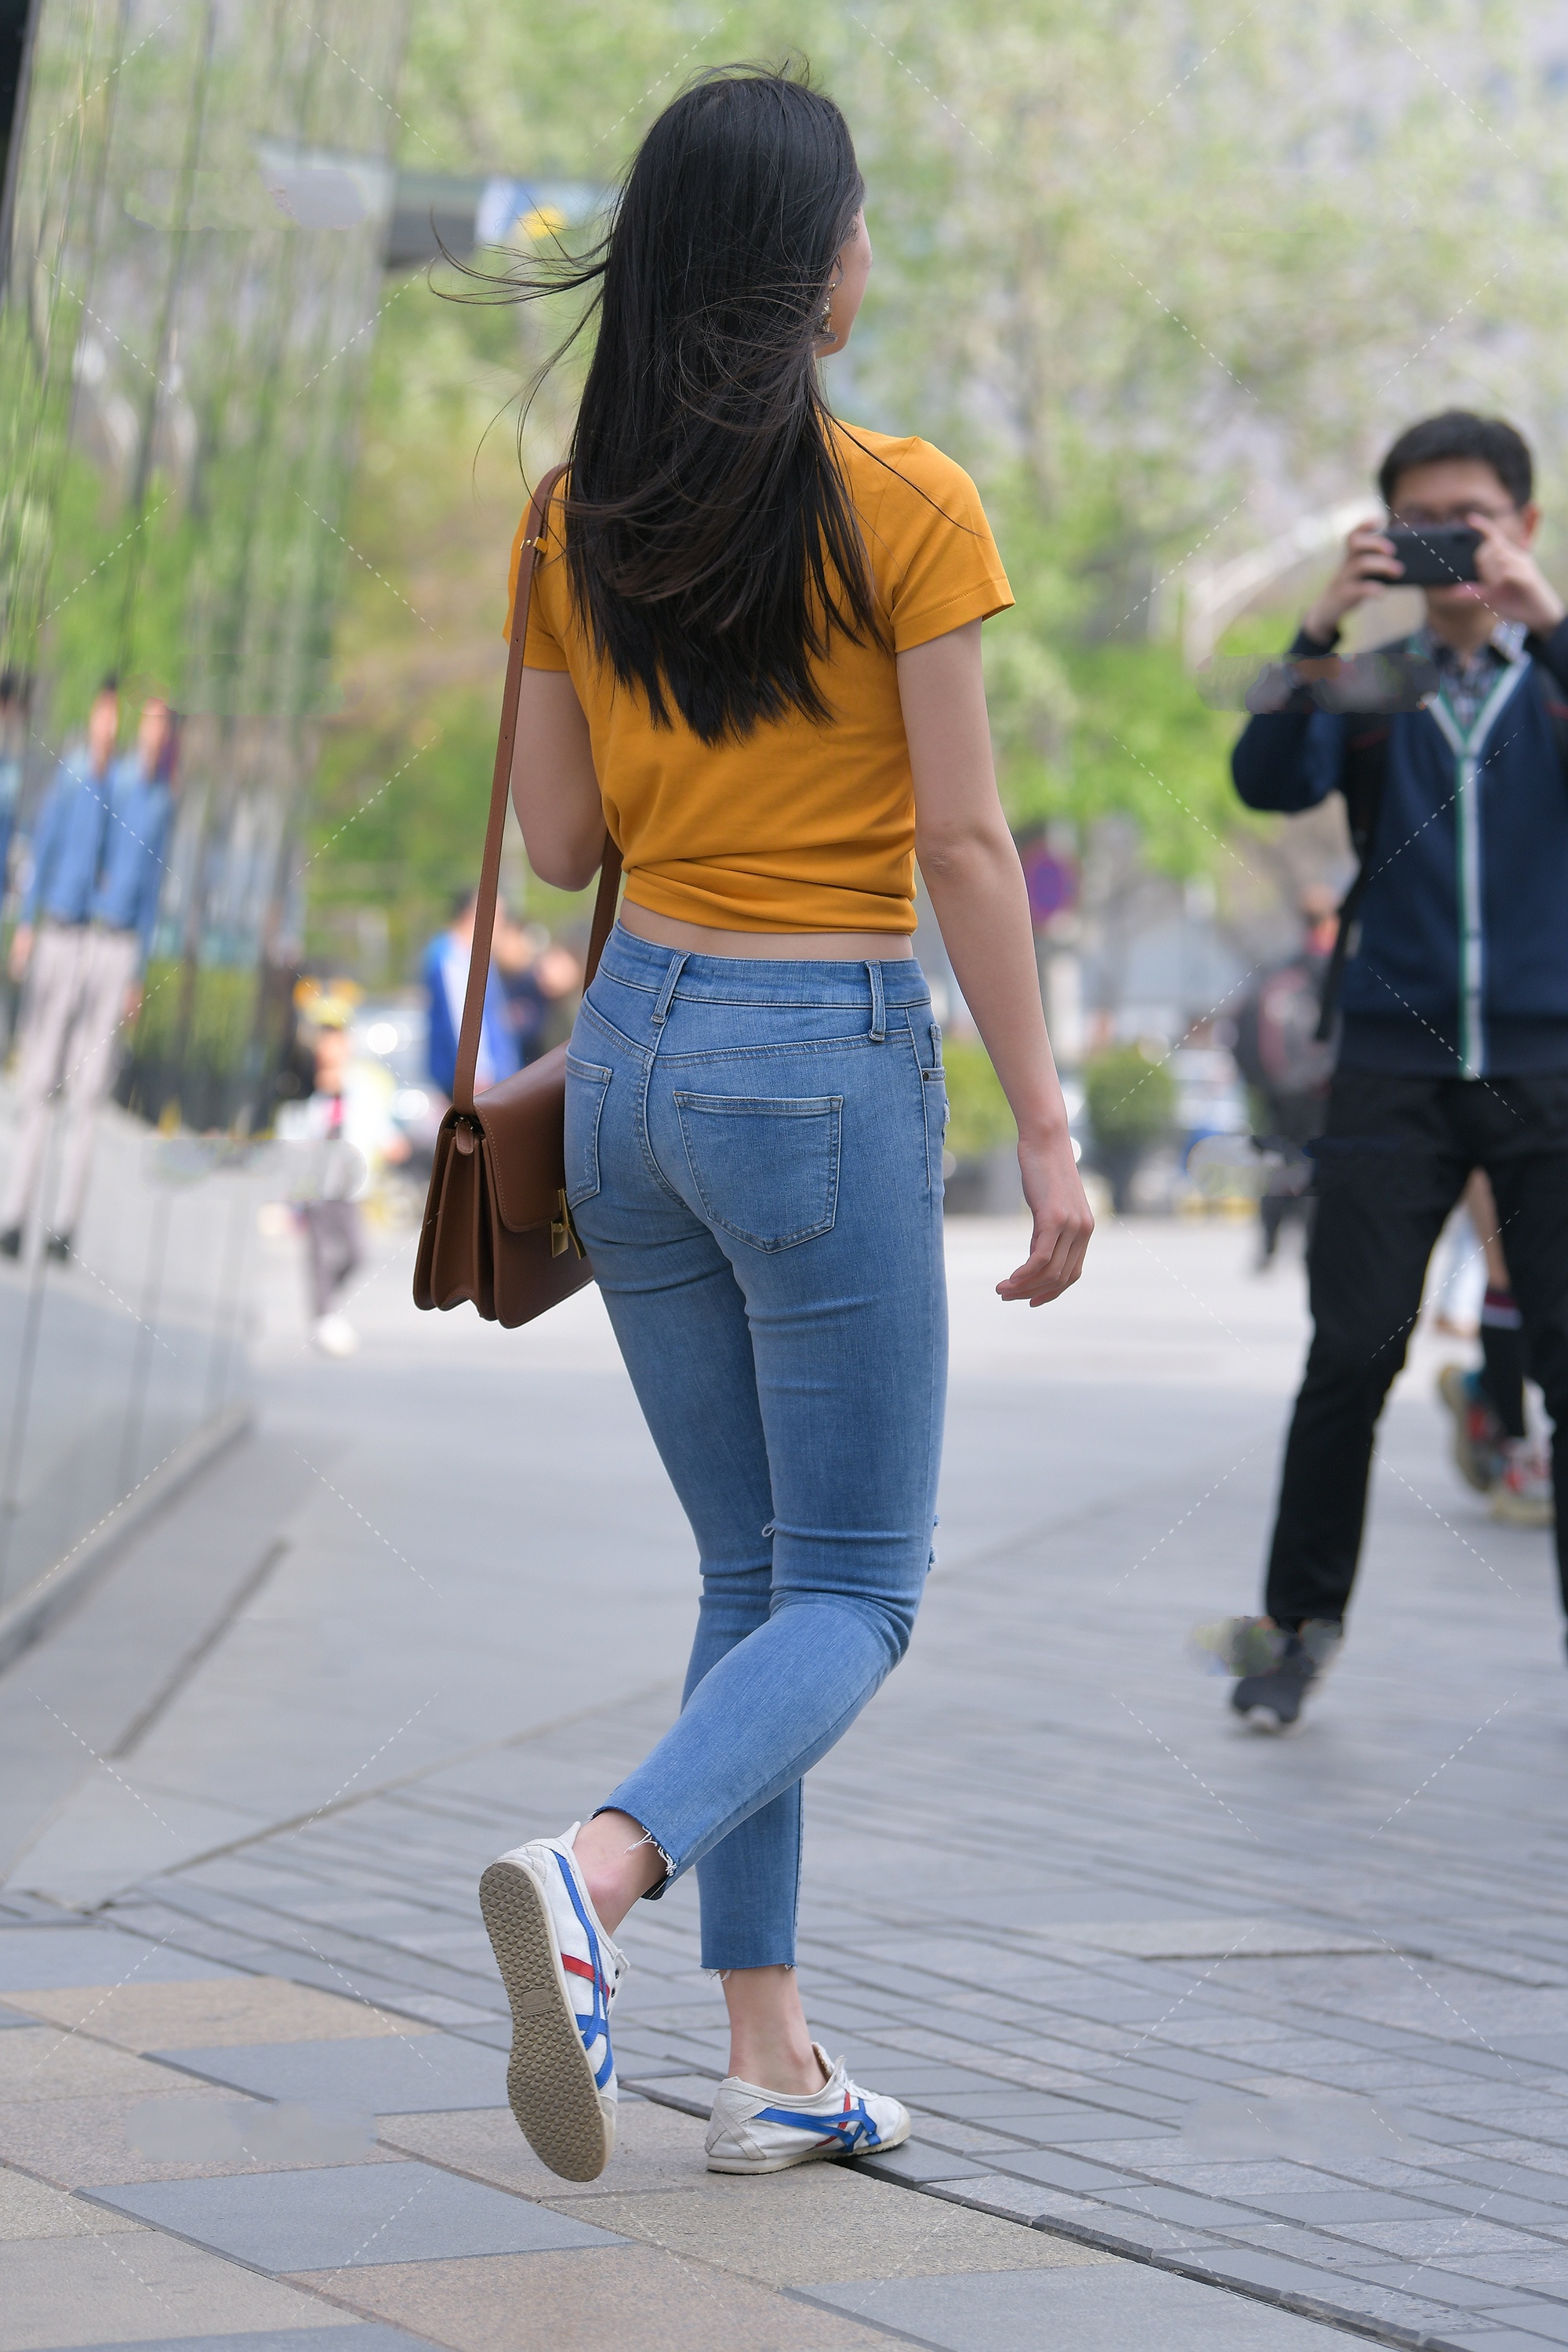 橘黄色修身短t搭配浅色牛仔裤,青春活泼,满满的校园风